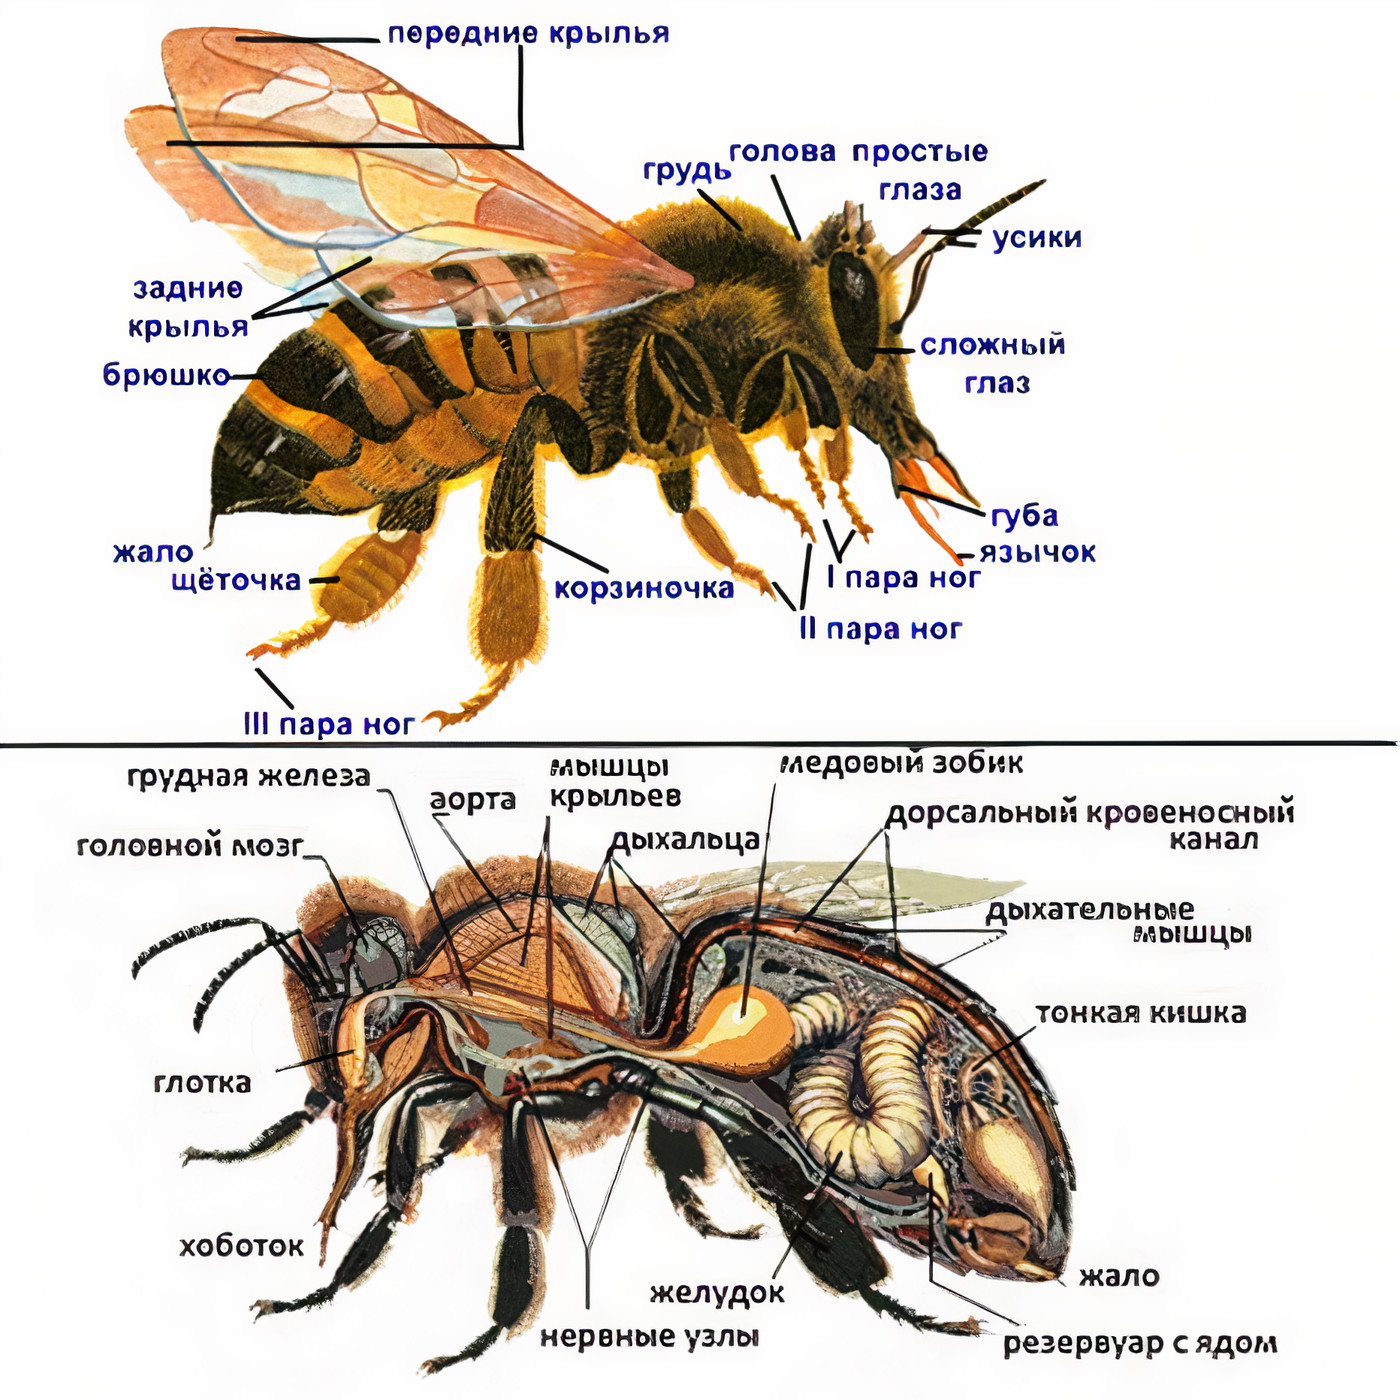 Отделы тела пчелы медоносной. Внутреннее строение пчелы медоносной. Строение тела пчелы медоносной. Внутренне строение пчелы. Строение пчелы медоносной.